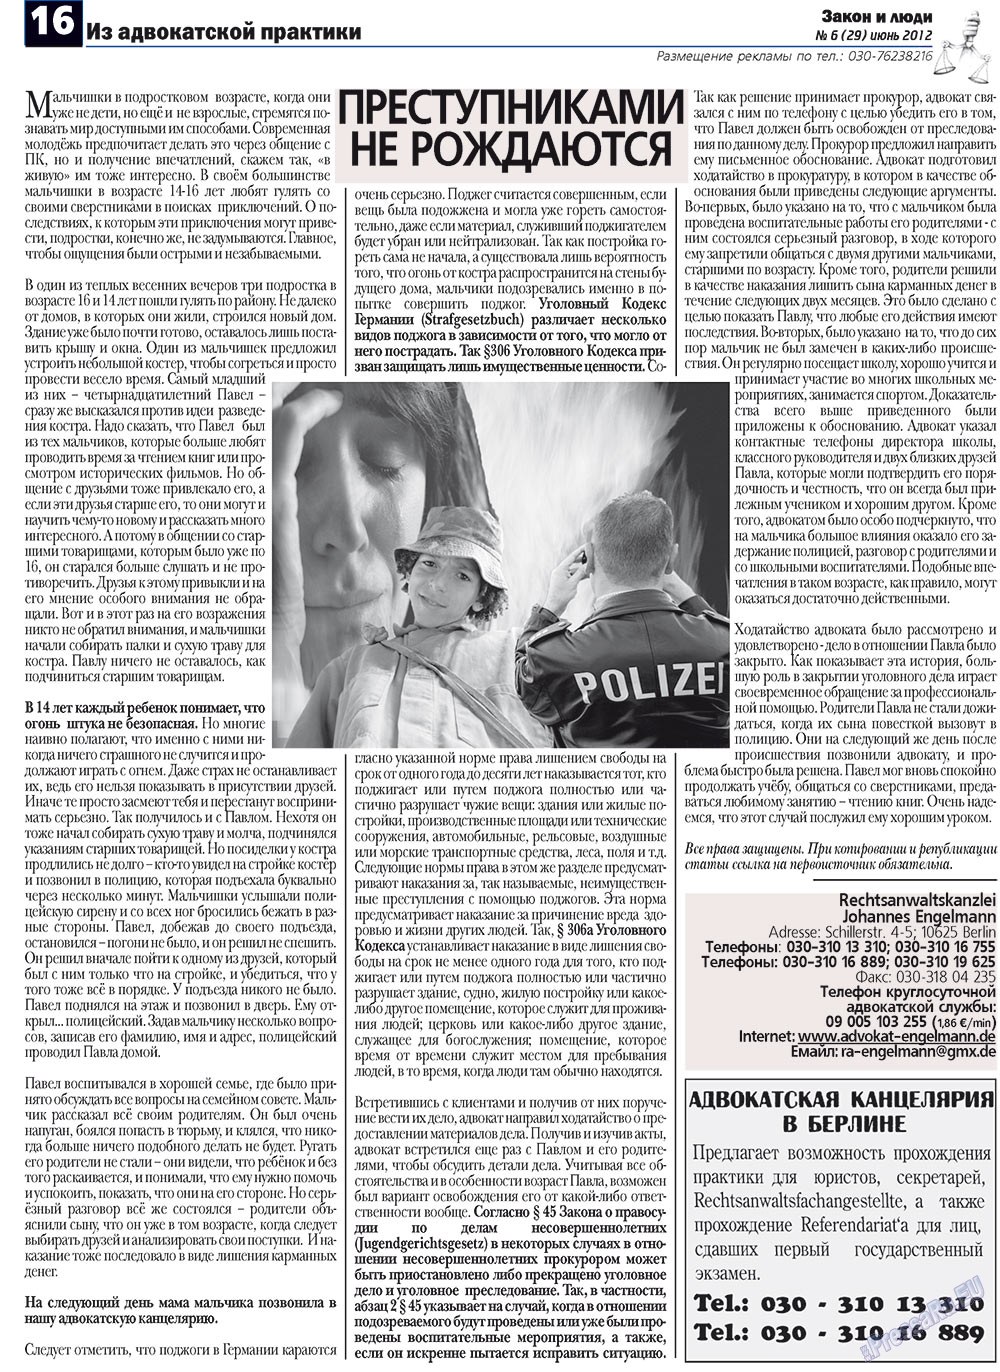 Закон и люди, газета. 2012 №6 стр.16